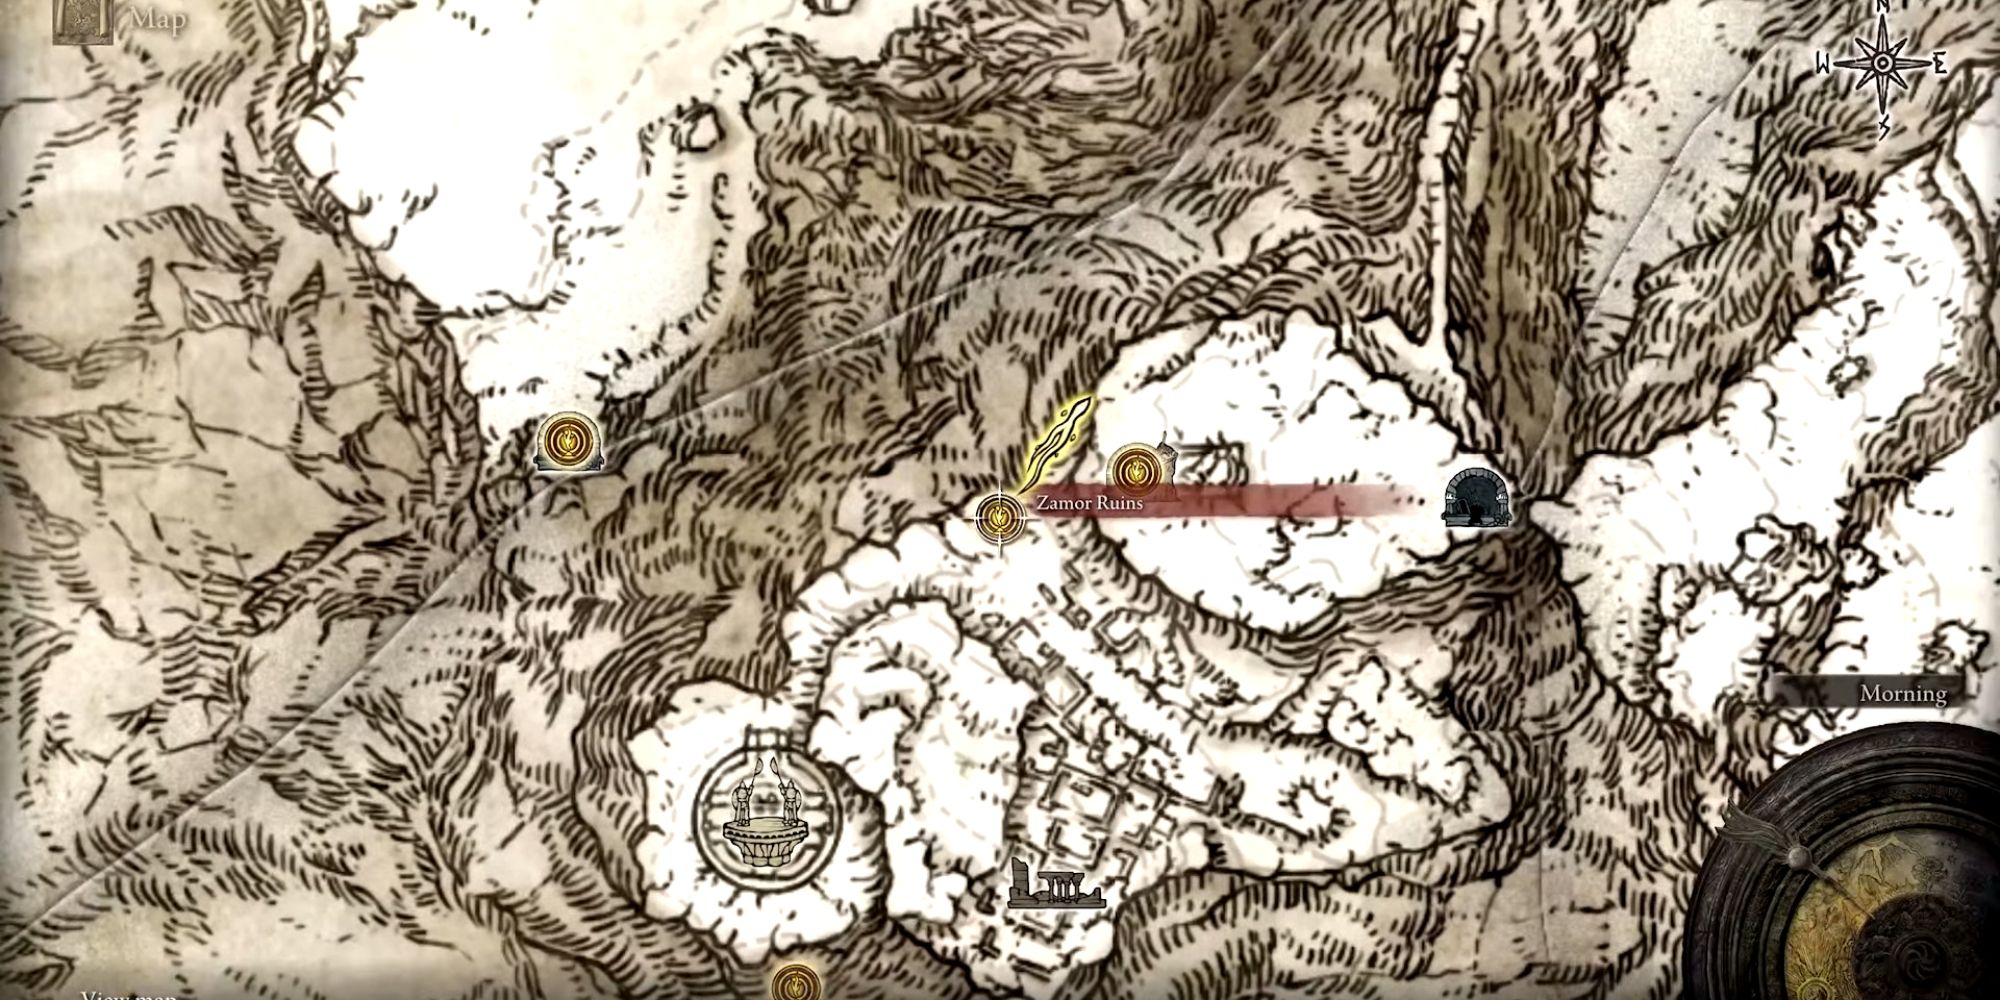 Zamor Ruins on the elden ring map